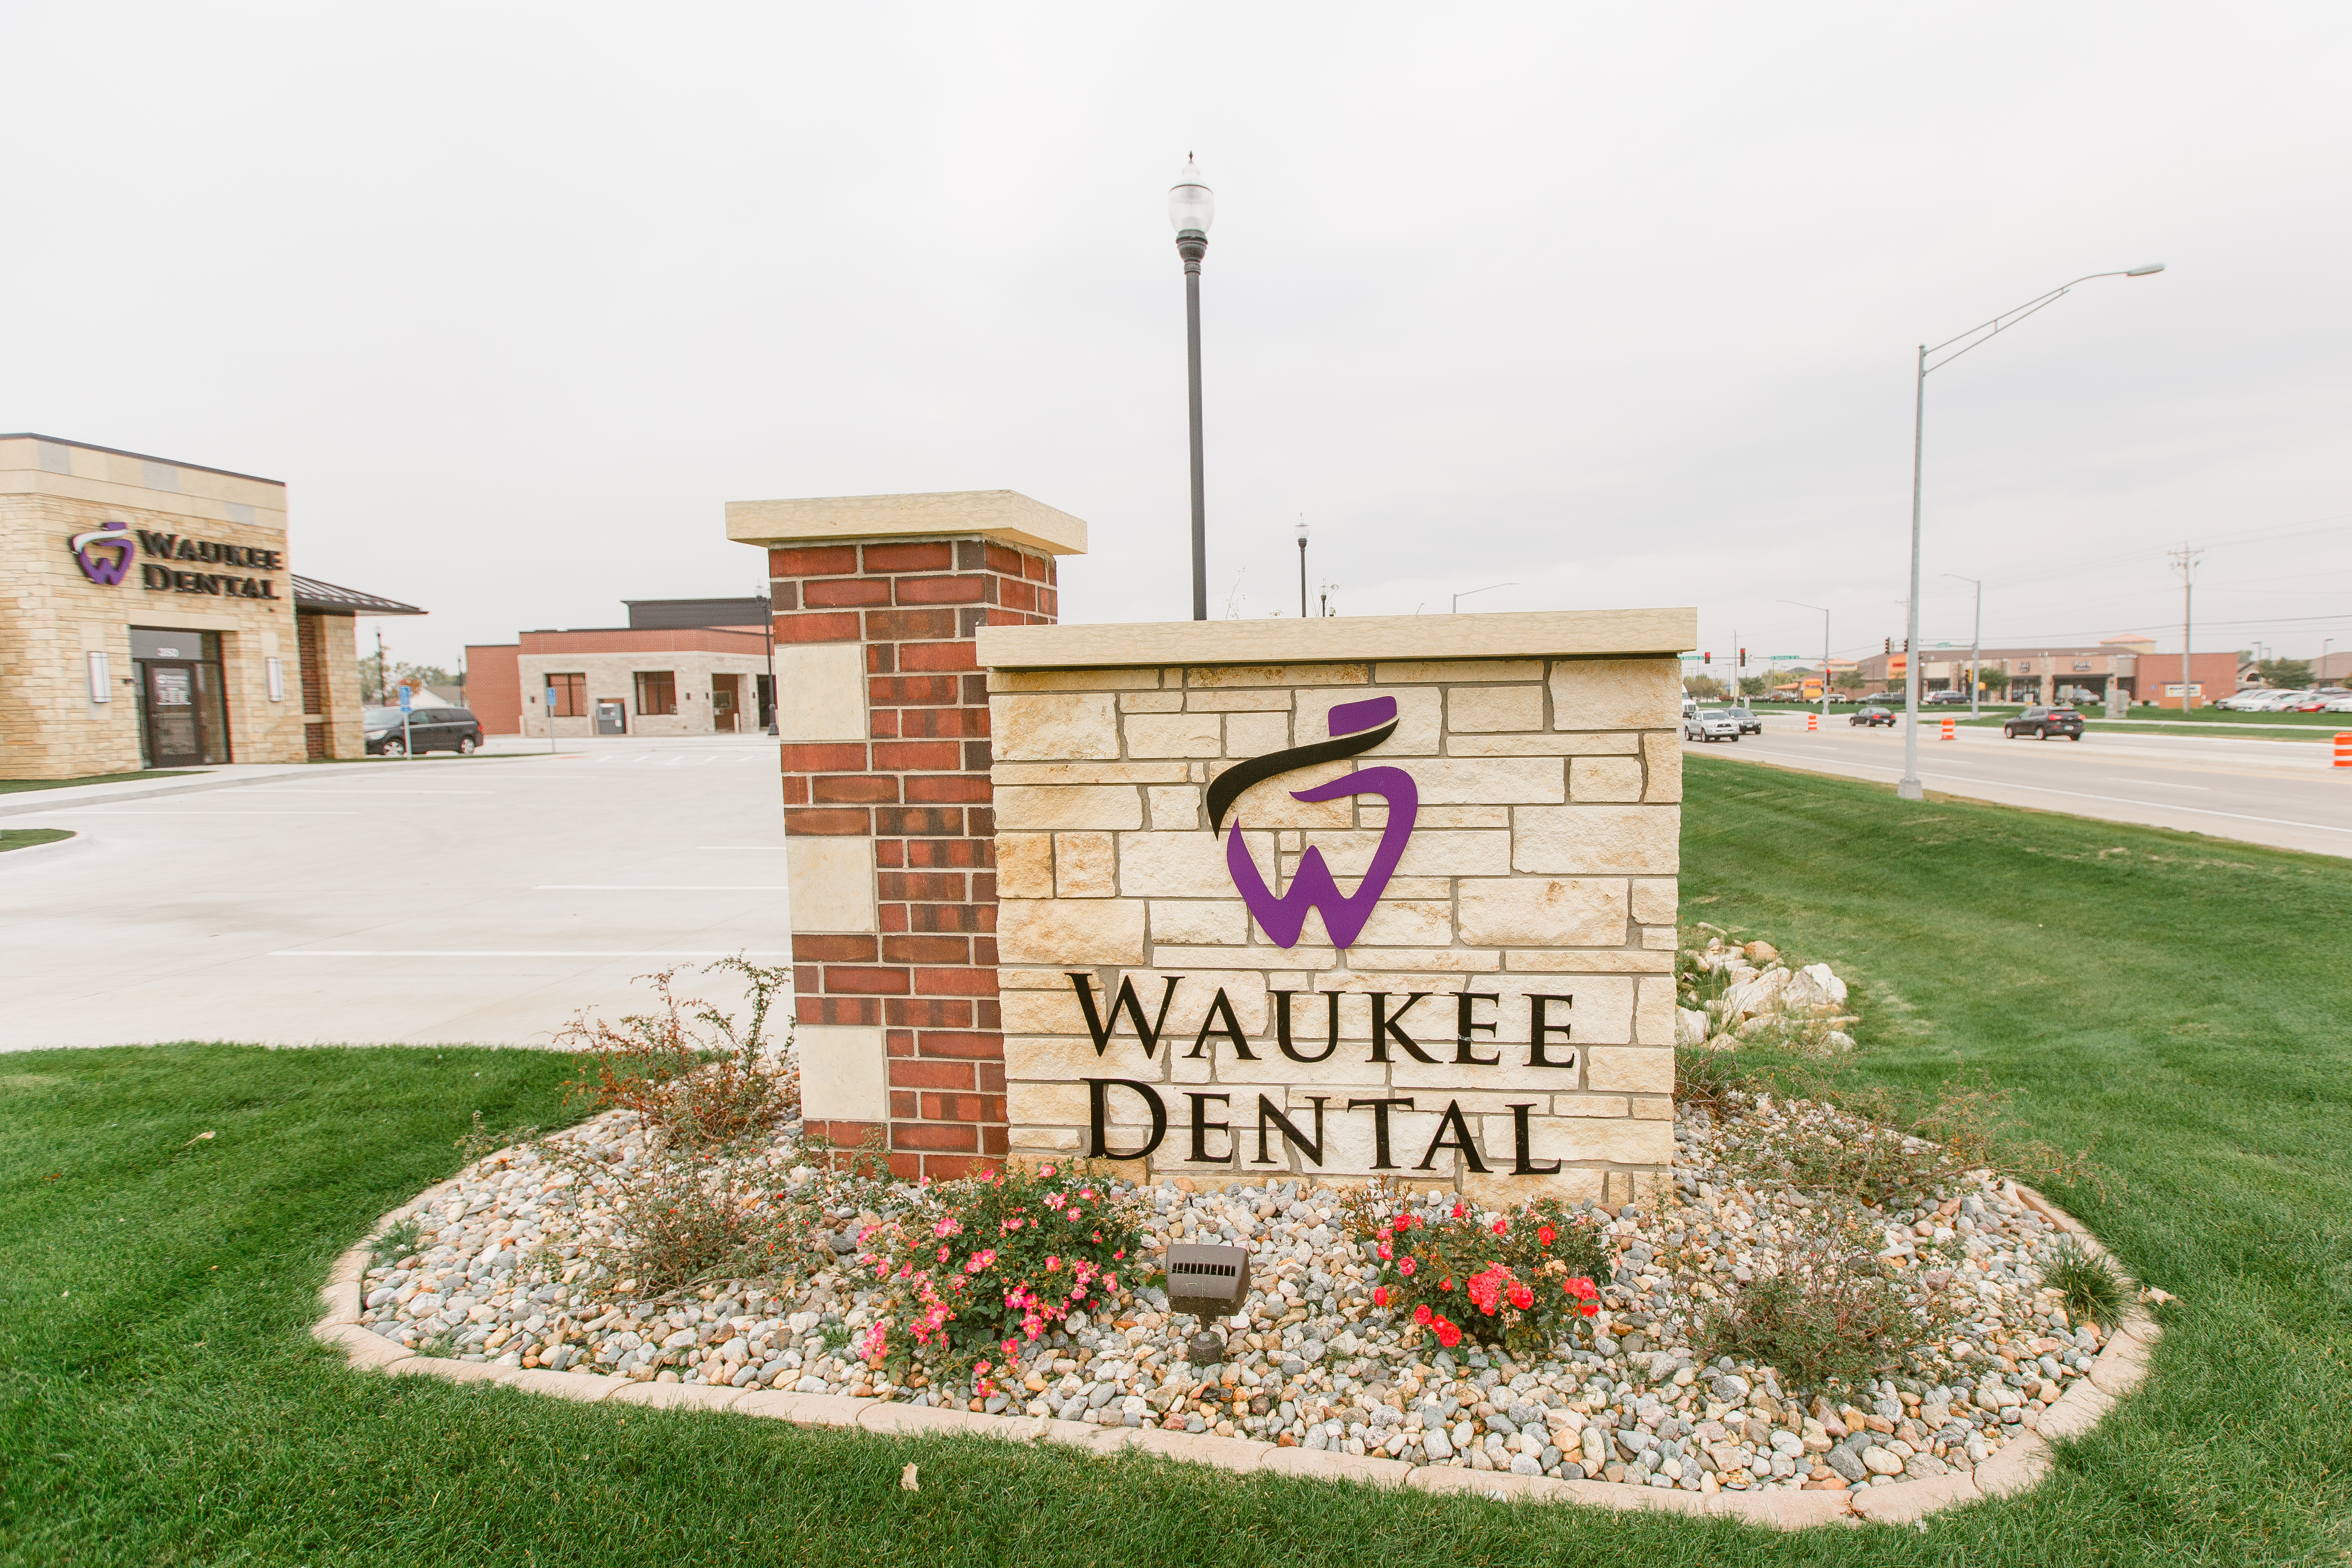 https://waukee.dental/wp-content/uploads/2018/05/Waukee-Dental-2.jpg